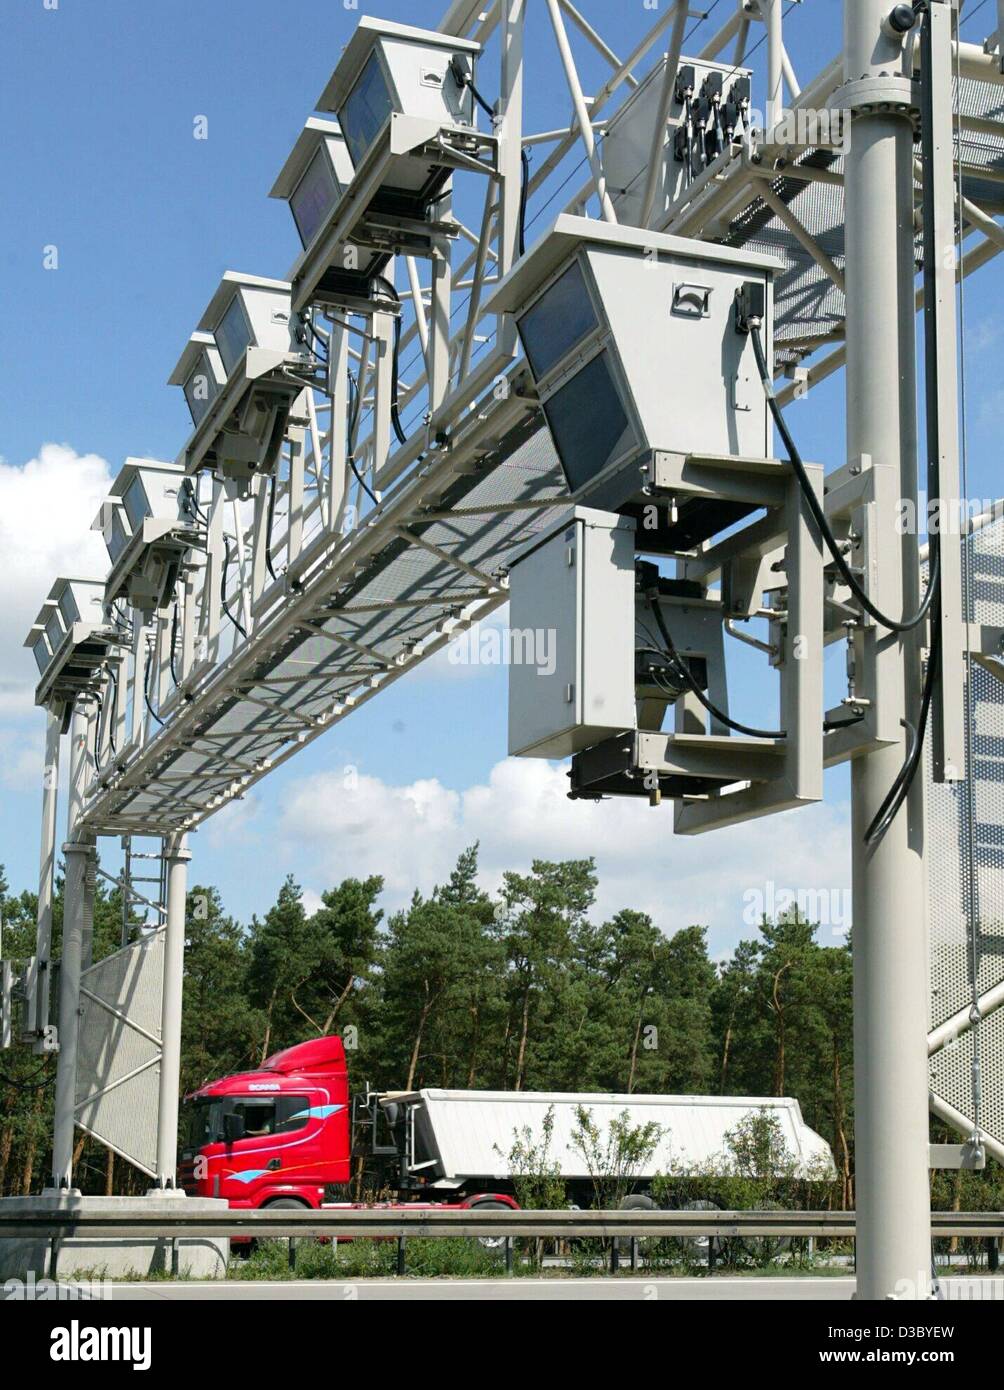 (Afp) - un camion passe sous un pont à péage sur l'autoroute A2 près de Lostau, Allemagne, 28 juillet 2003. À partir du 1er septembre 2003, les conducteurs de poids lourds en Allemagne auront à payer un péage en moyenne de 12,4 cents. Le prélèvement des péages seront automatiquement enregistrées par les dispositifs électroniques ins Banque D'Images